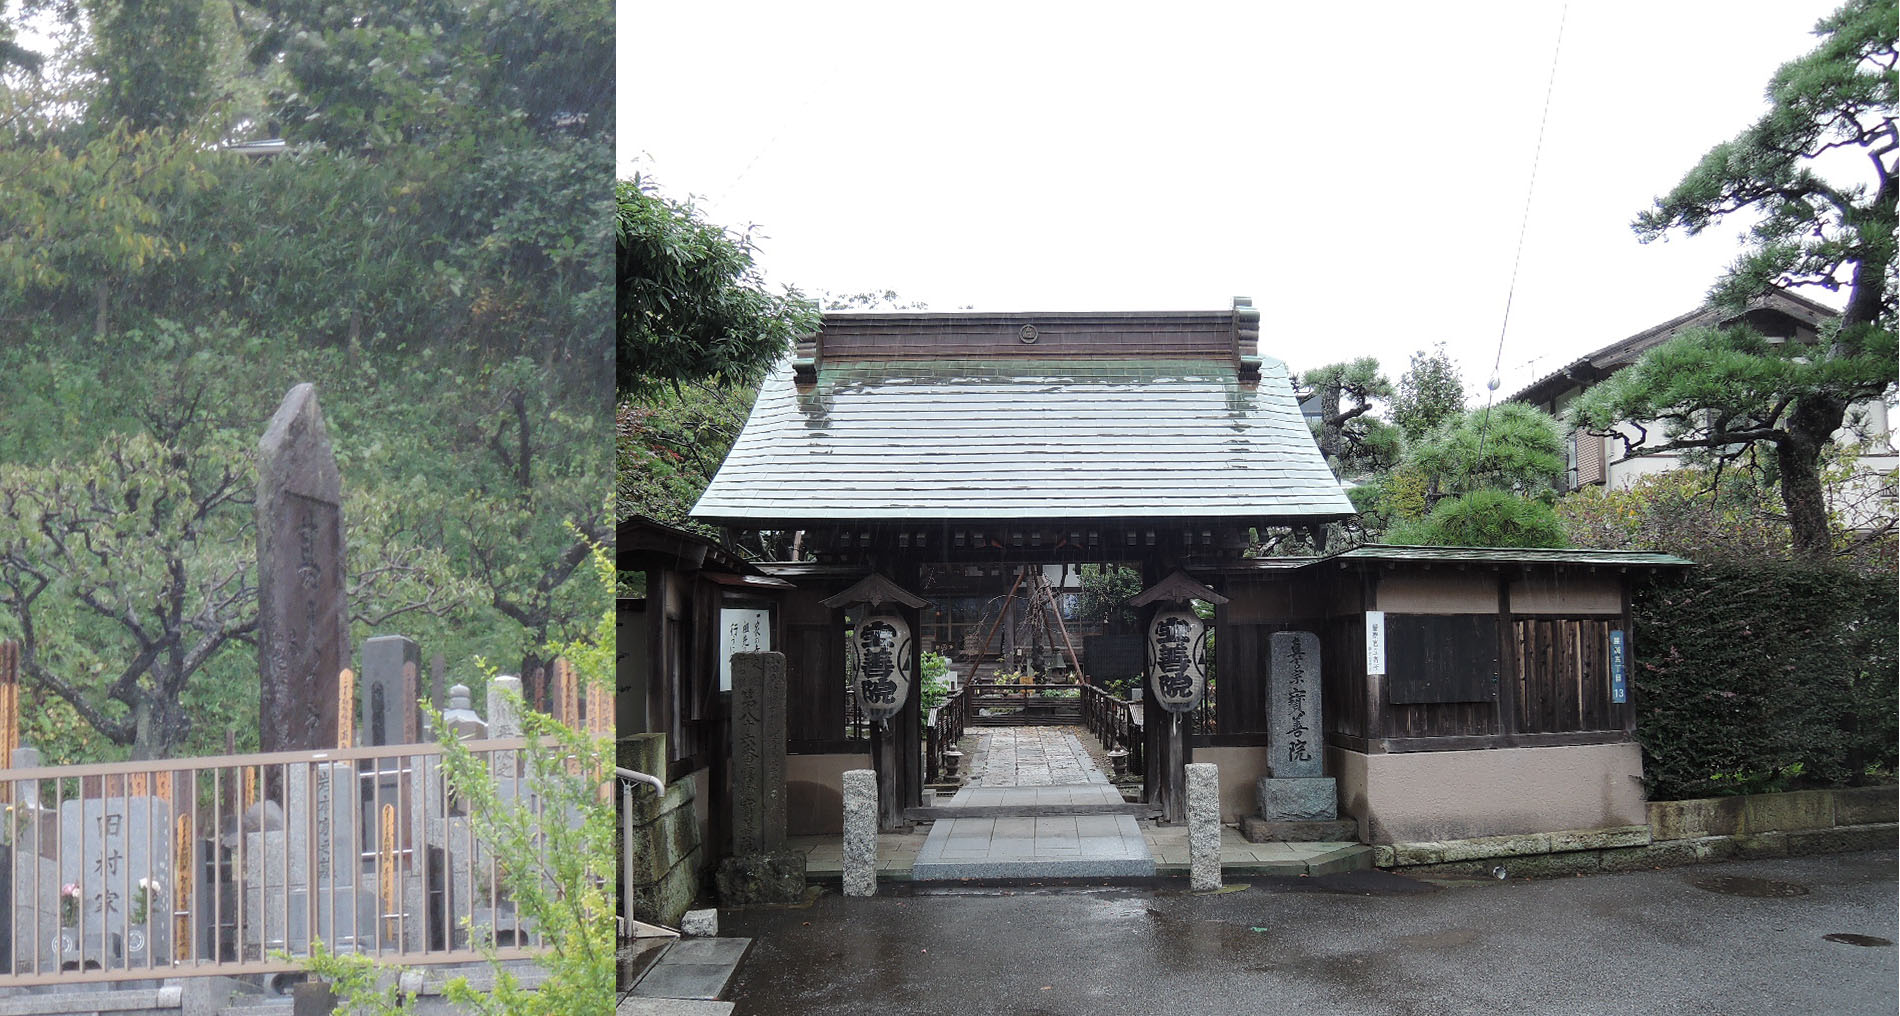 鎌倉市腰越にある神社・宝善院。音次郎の義姉・沖本幸子がここに眠っています。写真左は裏山にある沖本幸子の頌徳碑で、右側が寺の門です。以前は正門すぐの所にありましたが、裏山に移設されたそうです。